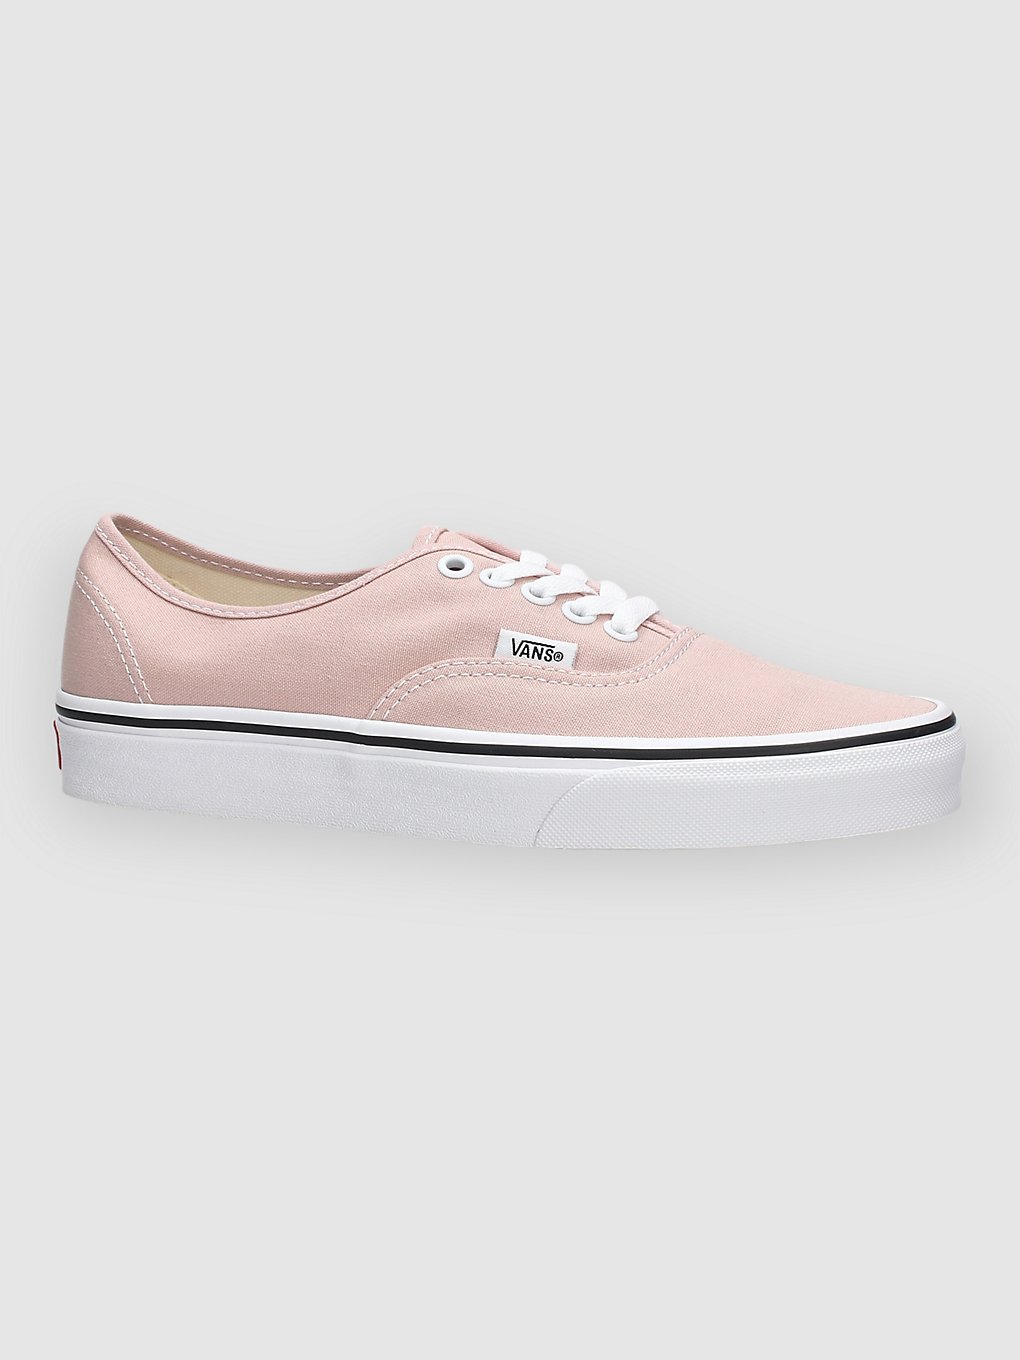 Vans Authentic Sneakers roze